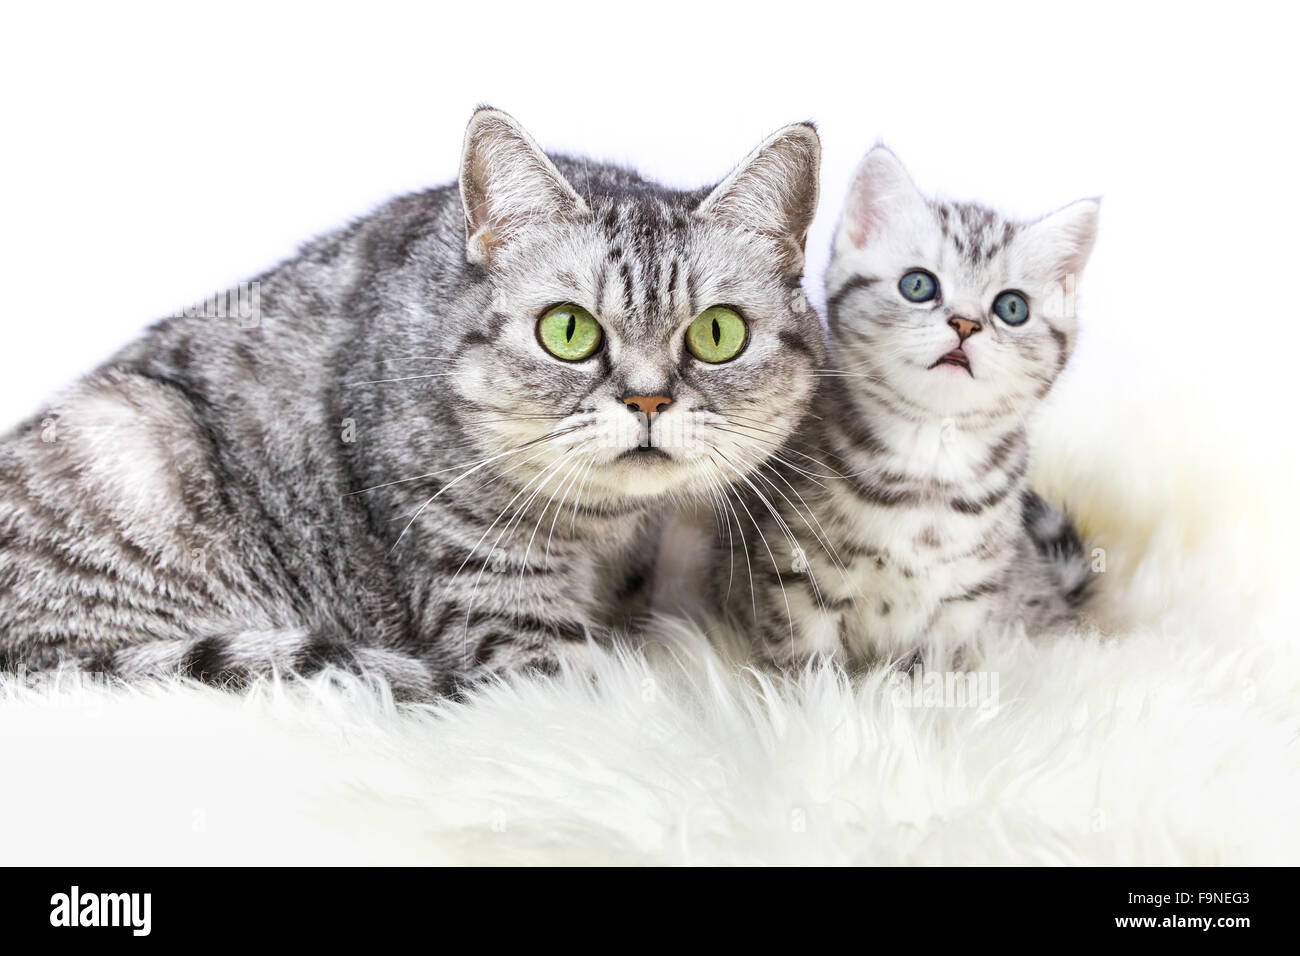 Madre British Shorthair silver tabby cat seduto con gattino isolati su sfondo bianco Foto Stock